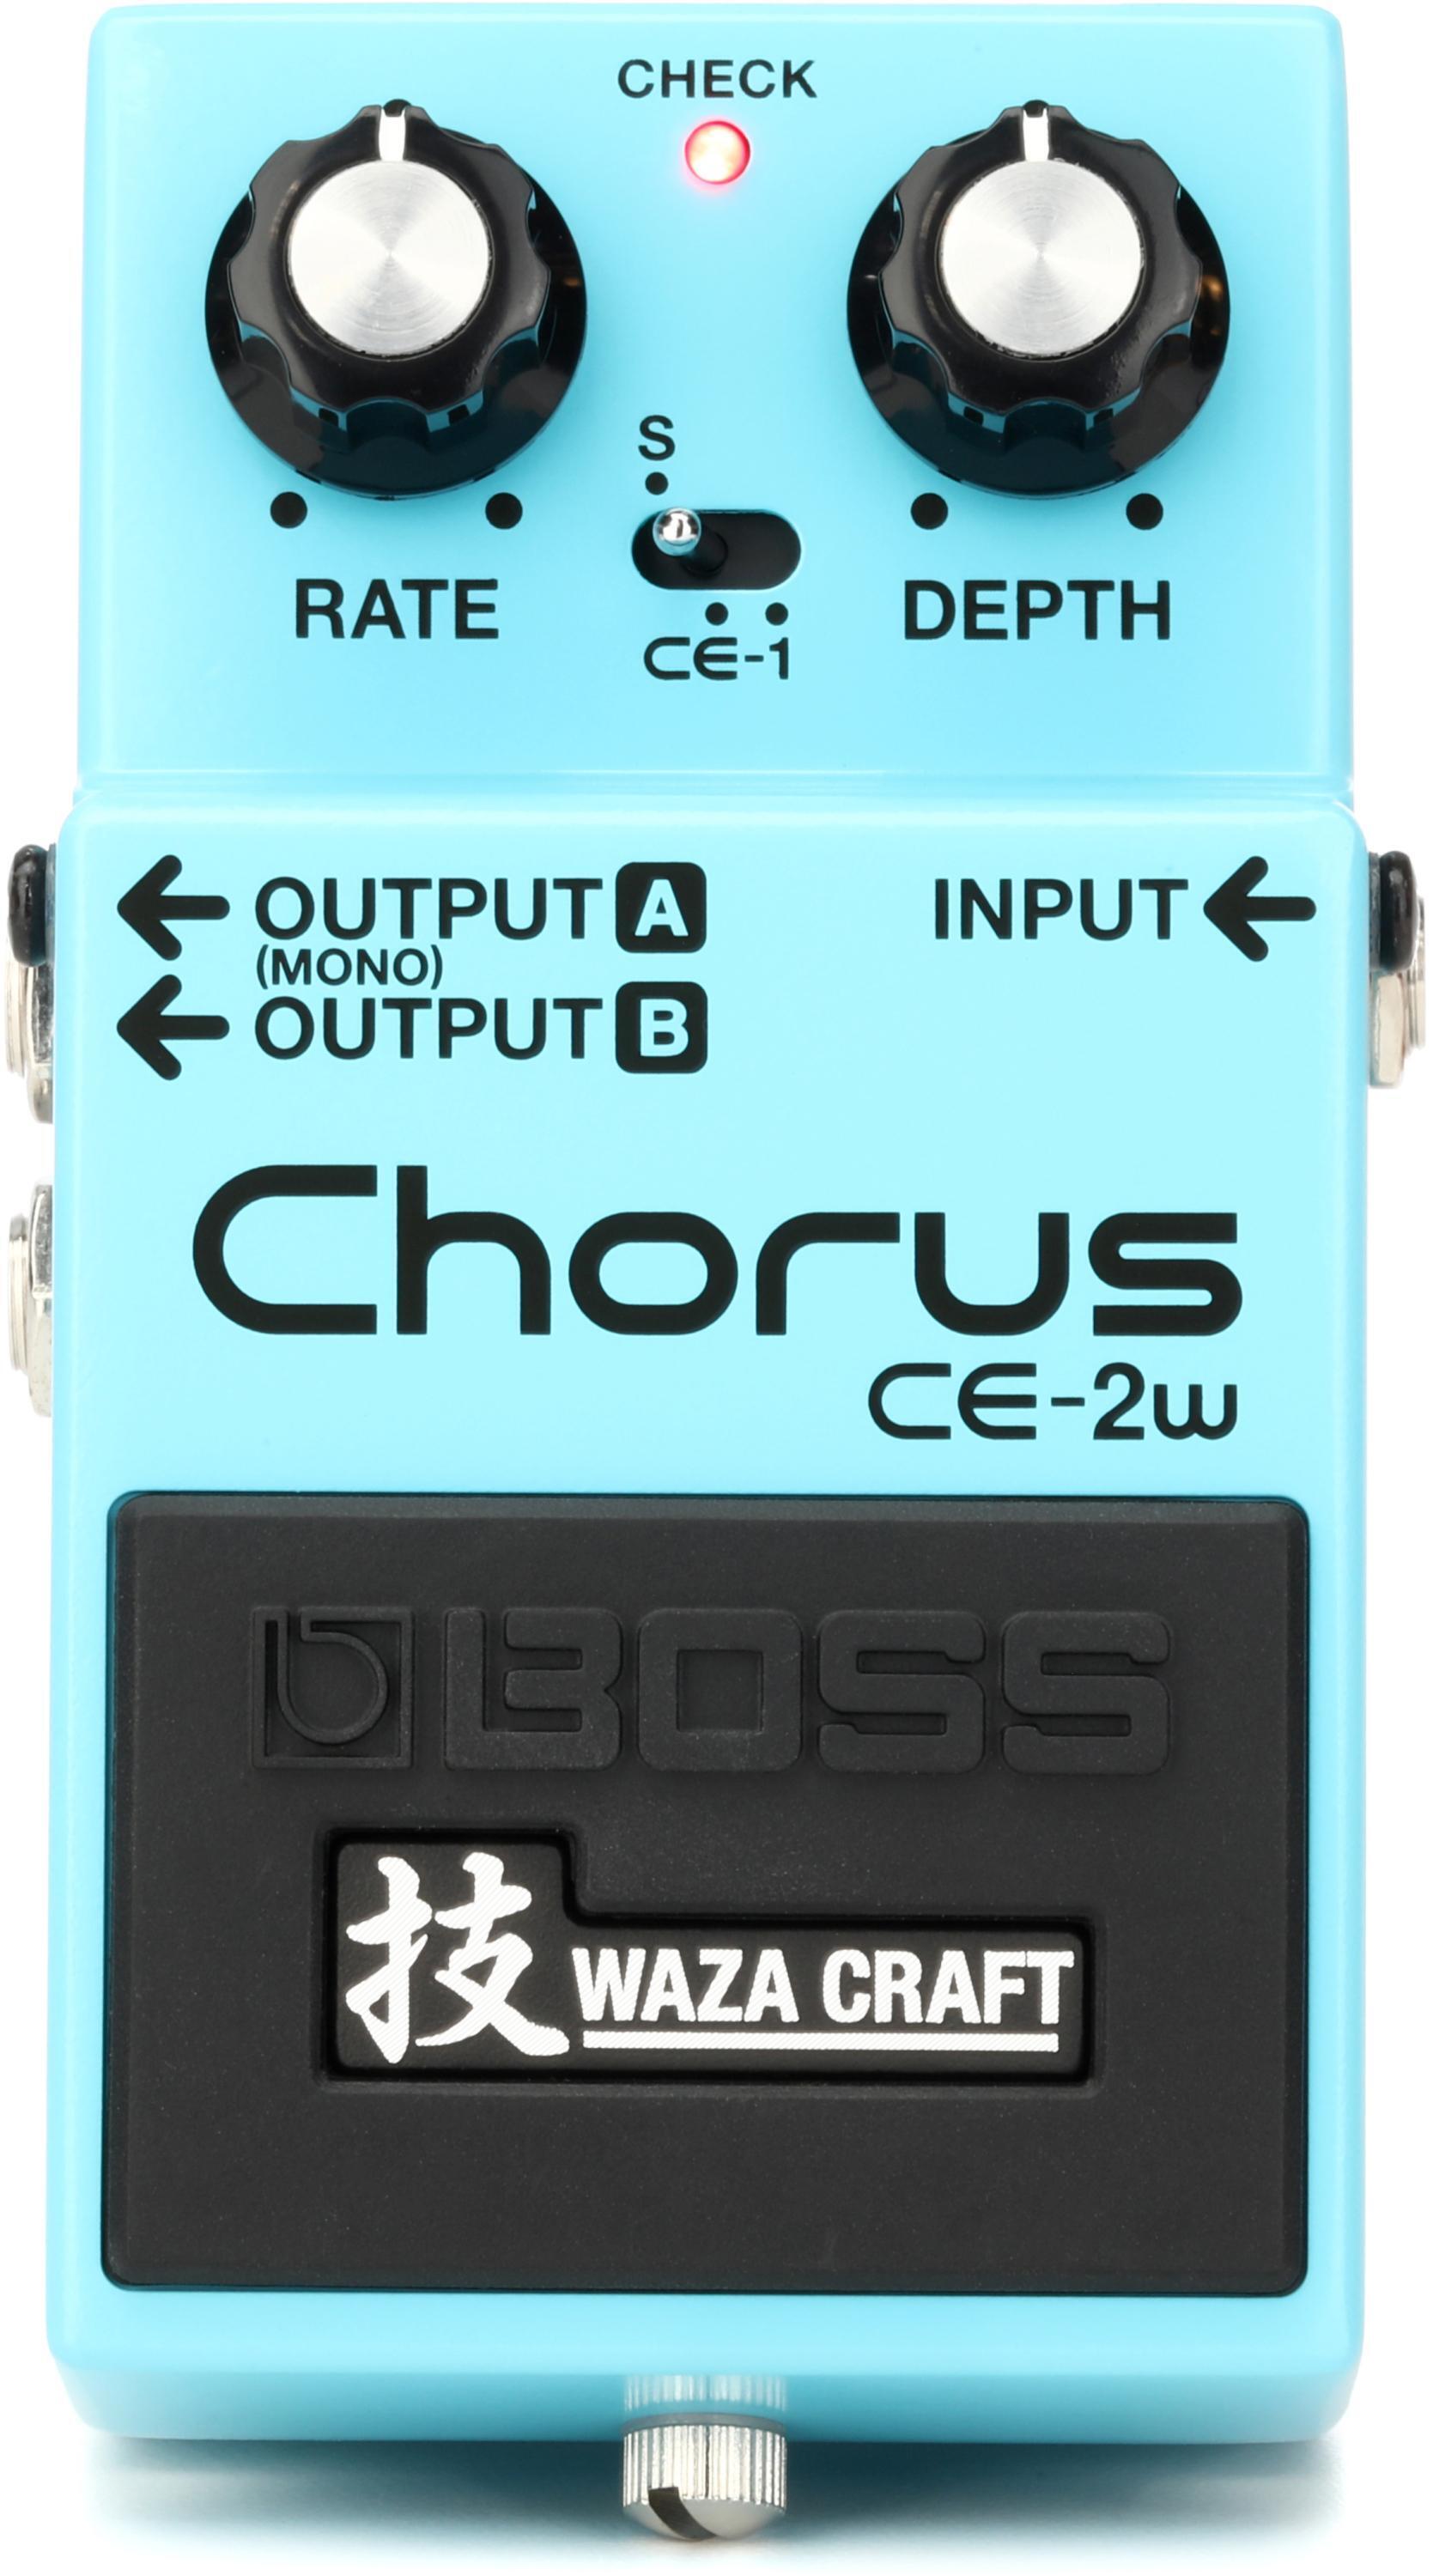 Boss CE-2W Waza Craft Chorus Pedal | Sweetwater